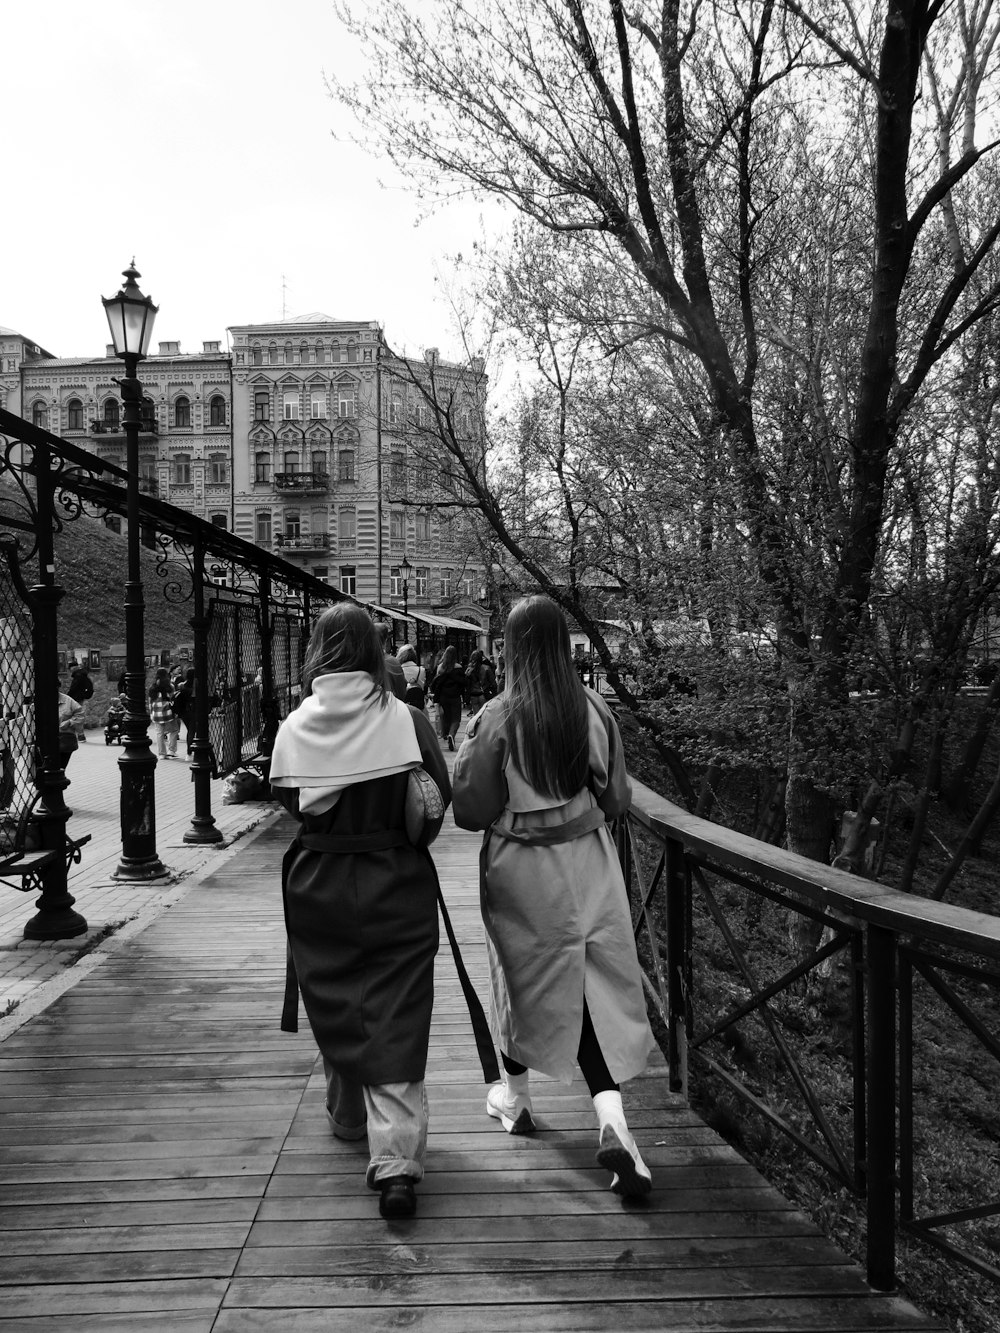 two women are walking down a wooden walkway